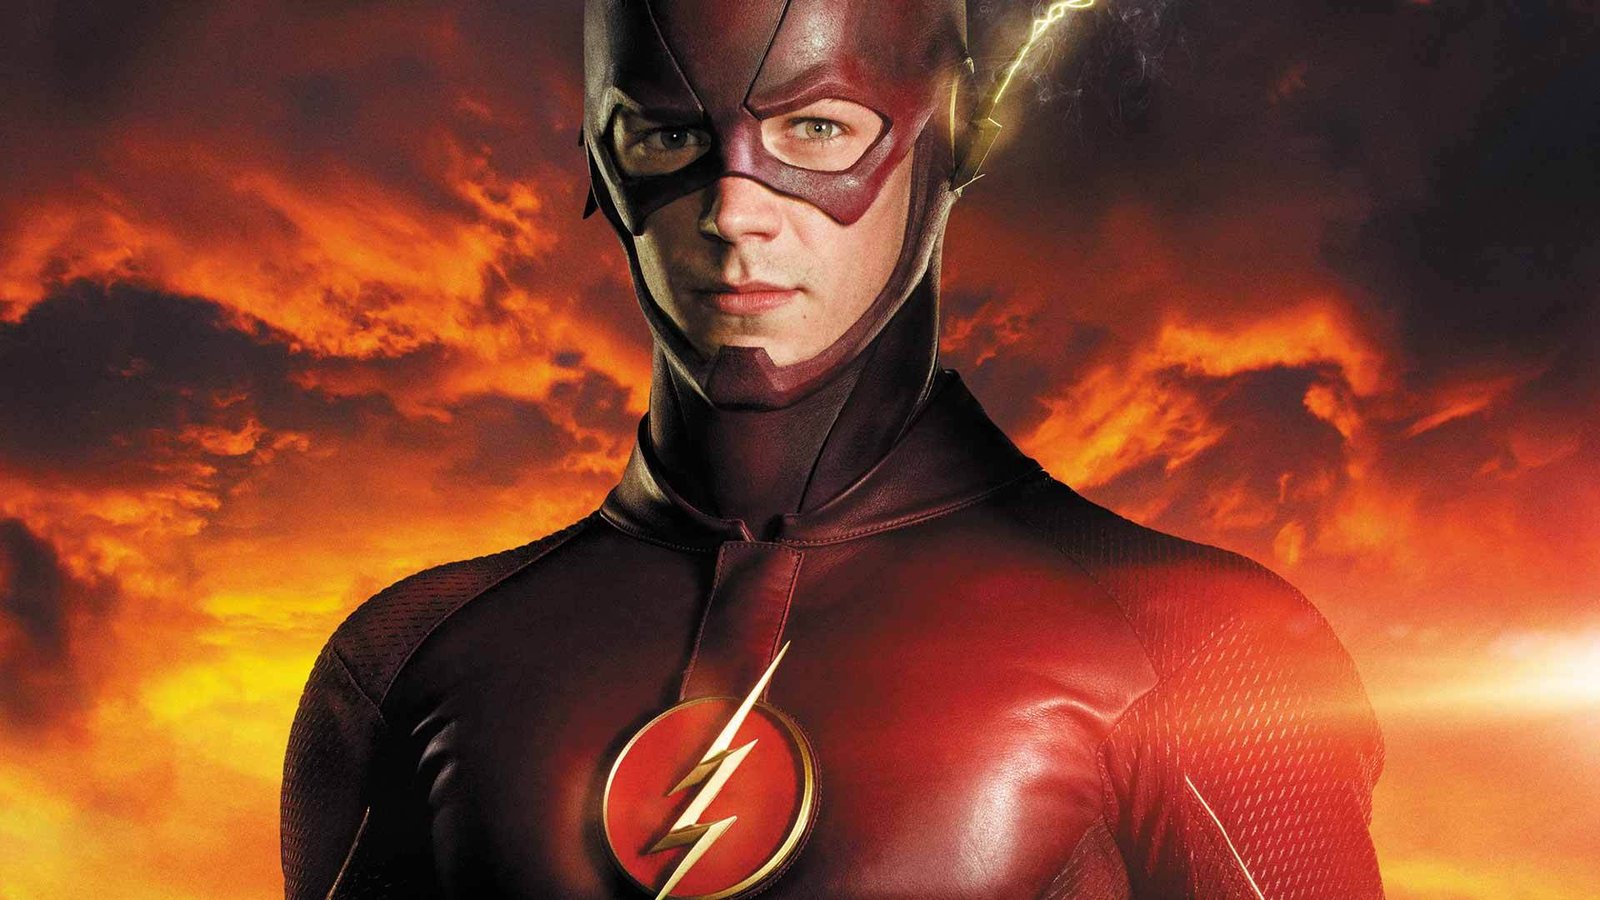 Флэш / The Flash (4 сезон)